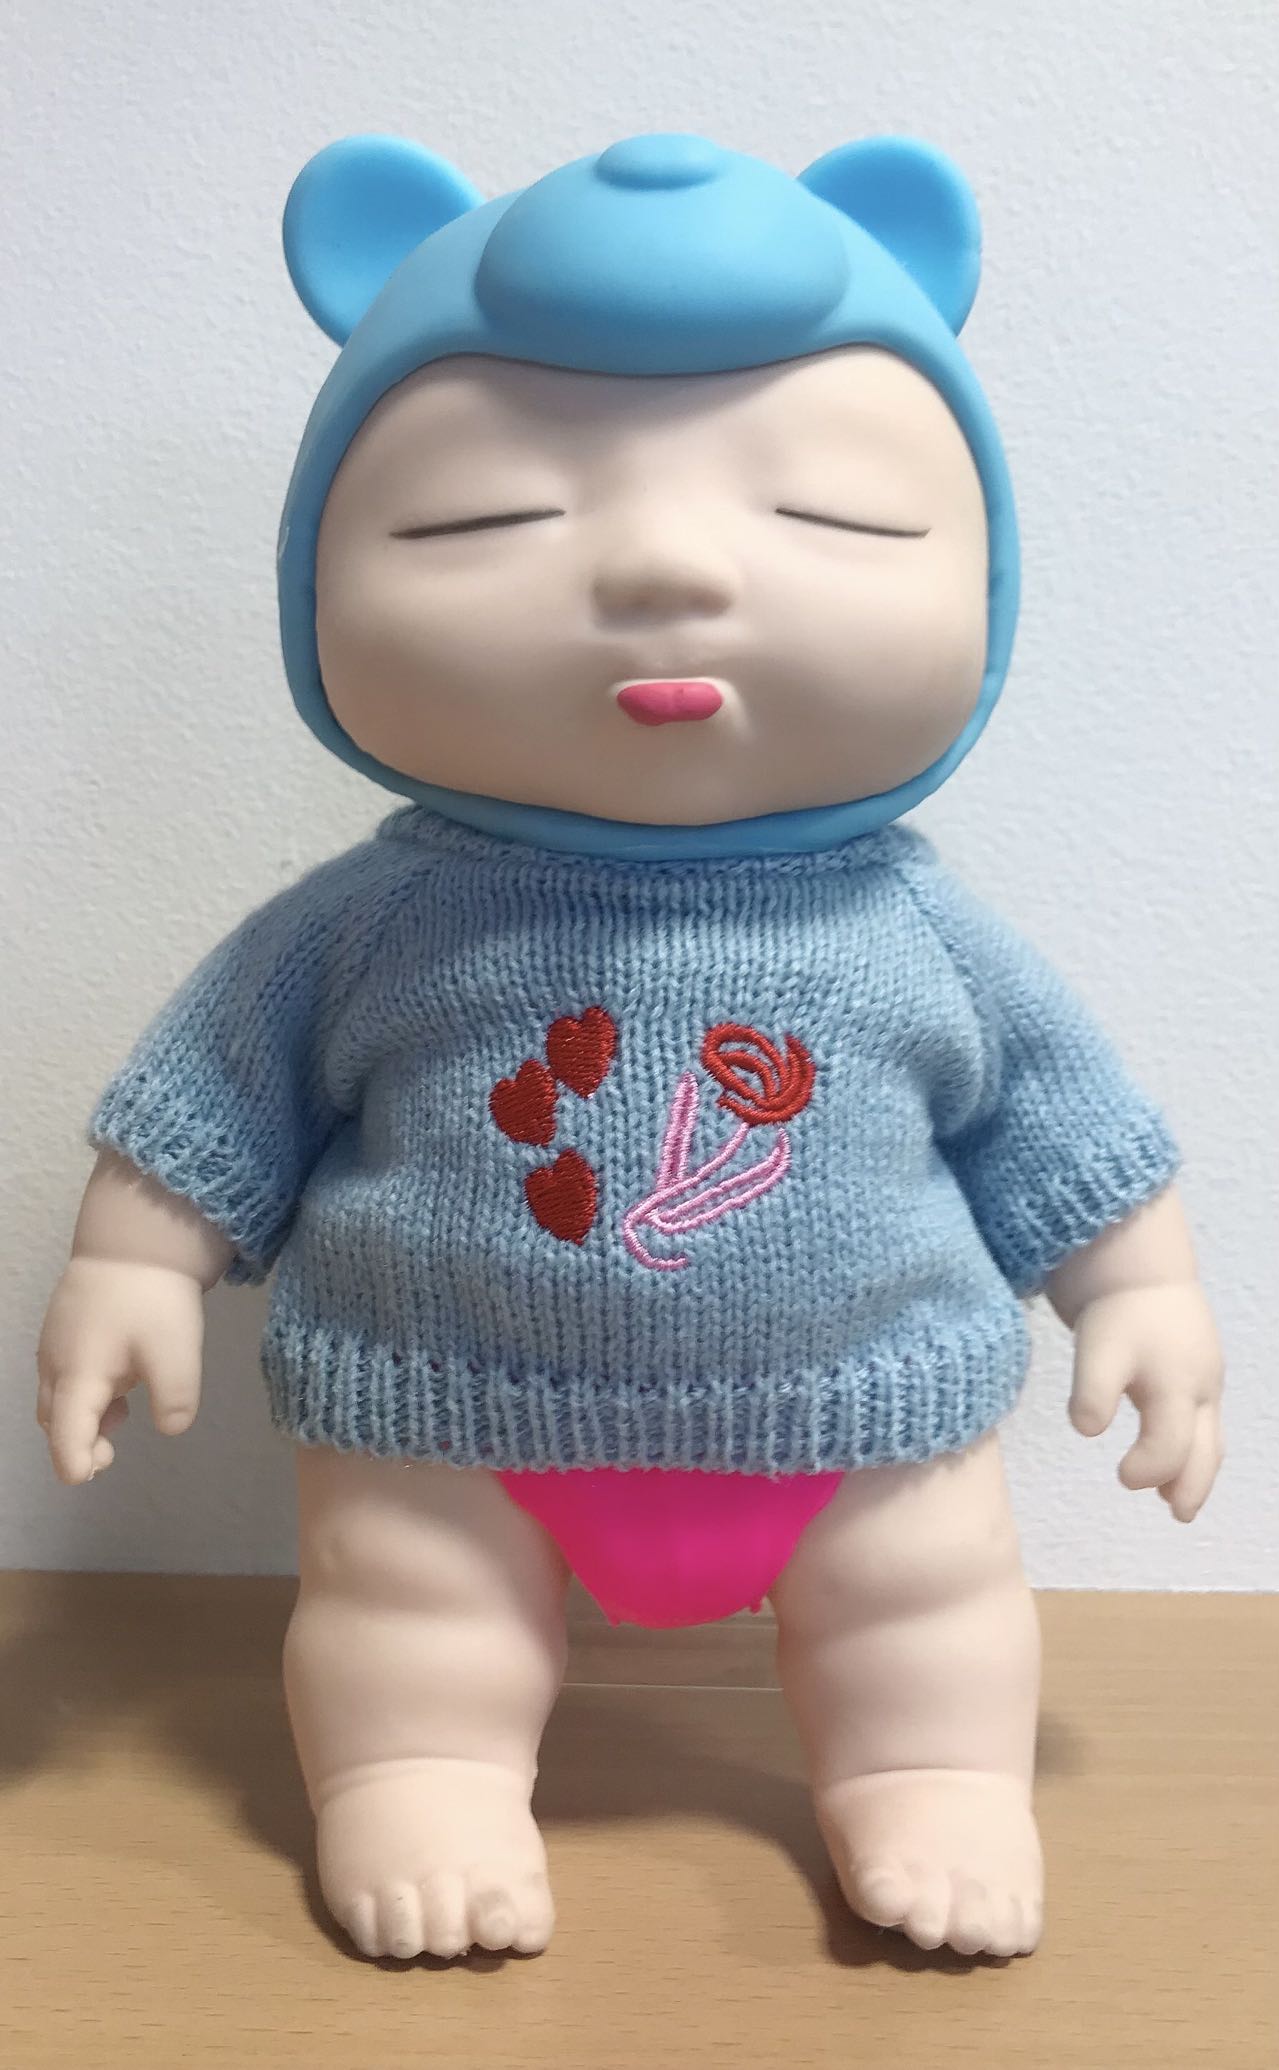 【公式】 アグリーベイビーズ BIG セーター付 スクイーズ人形 おもちゃ クリスマス スクイーズ玩具 ストレス解消 減圧おもちゃ 発散 グッズ  低反発 耐久性 伸縮性 触感いい | superb products